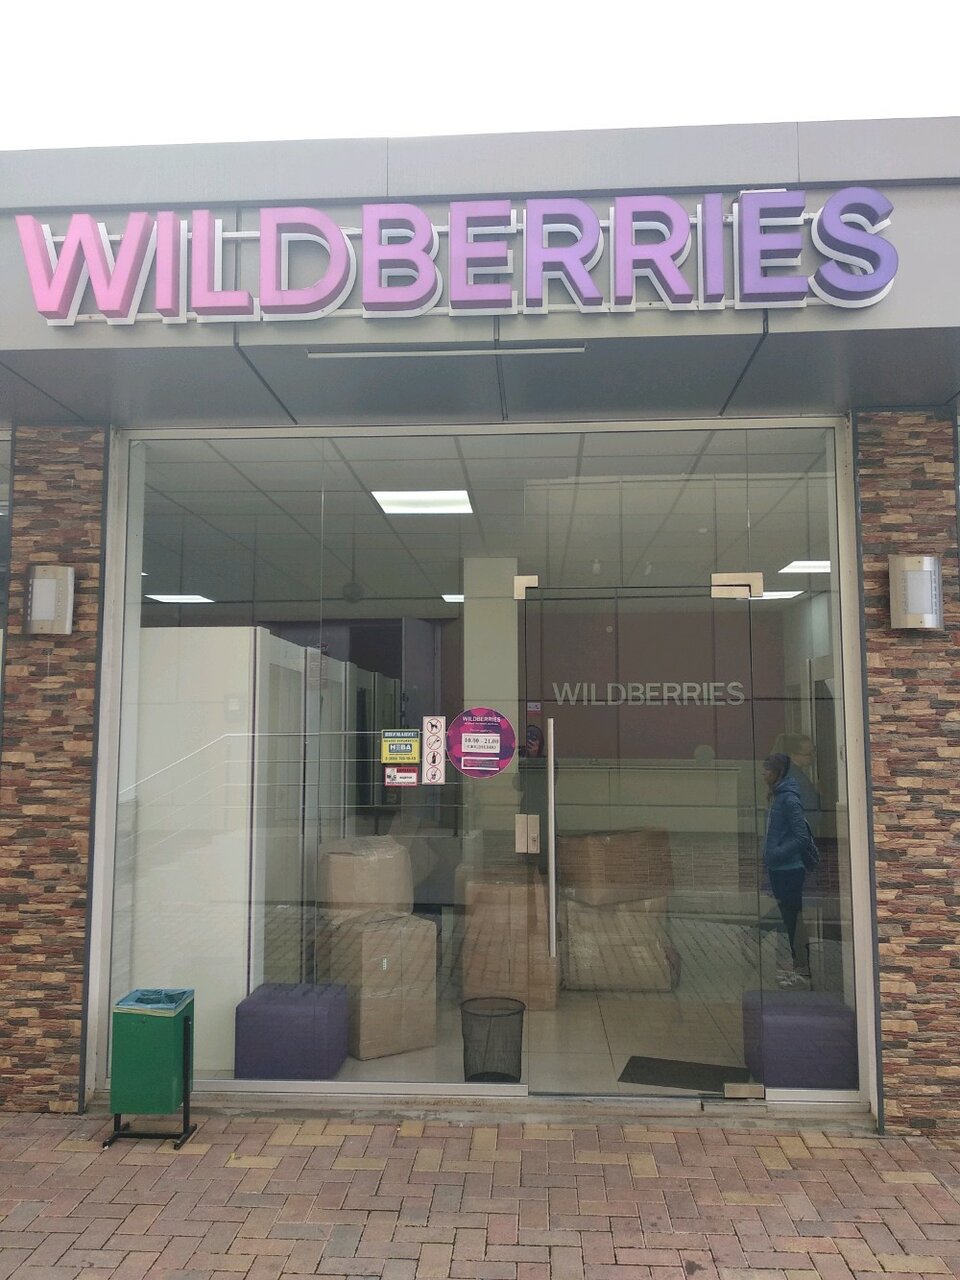 Wildberries Интернет Магазин Сочи